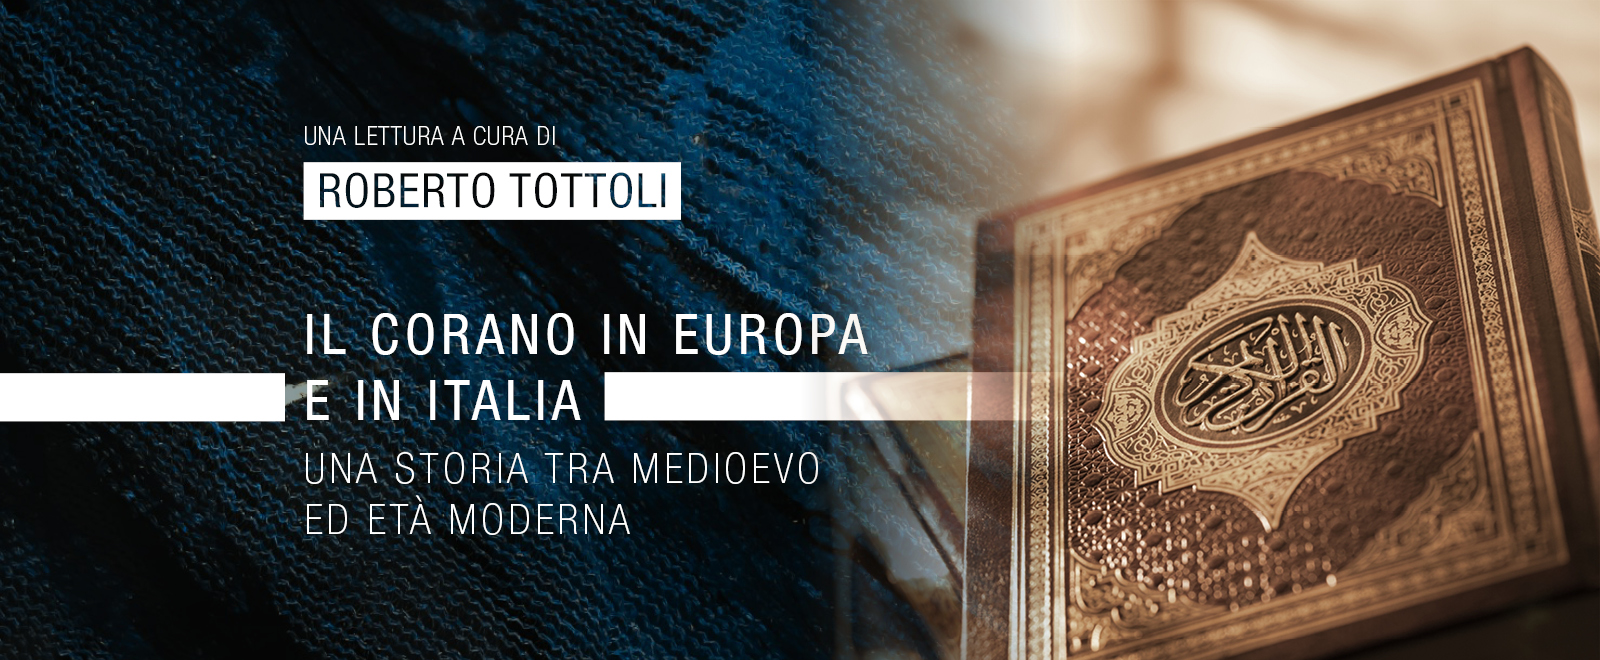 Il Corano in Europa e in Italia, una lettura a cura di Roberto Tottoli